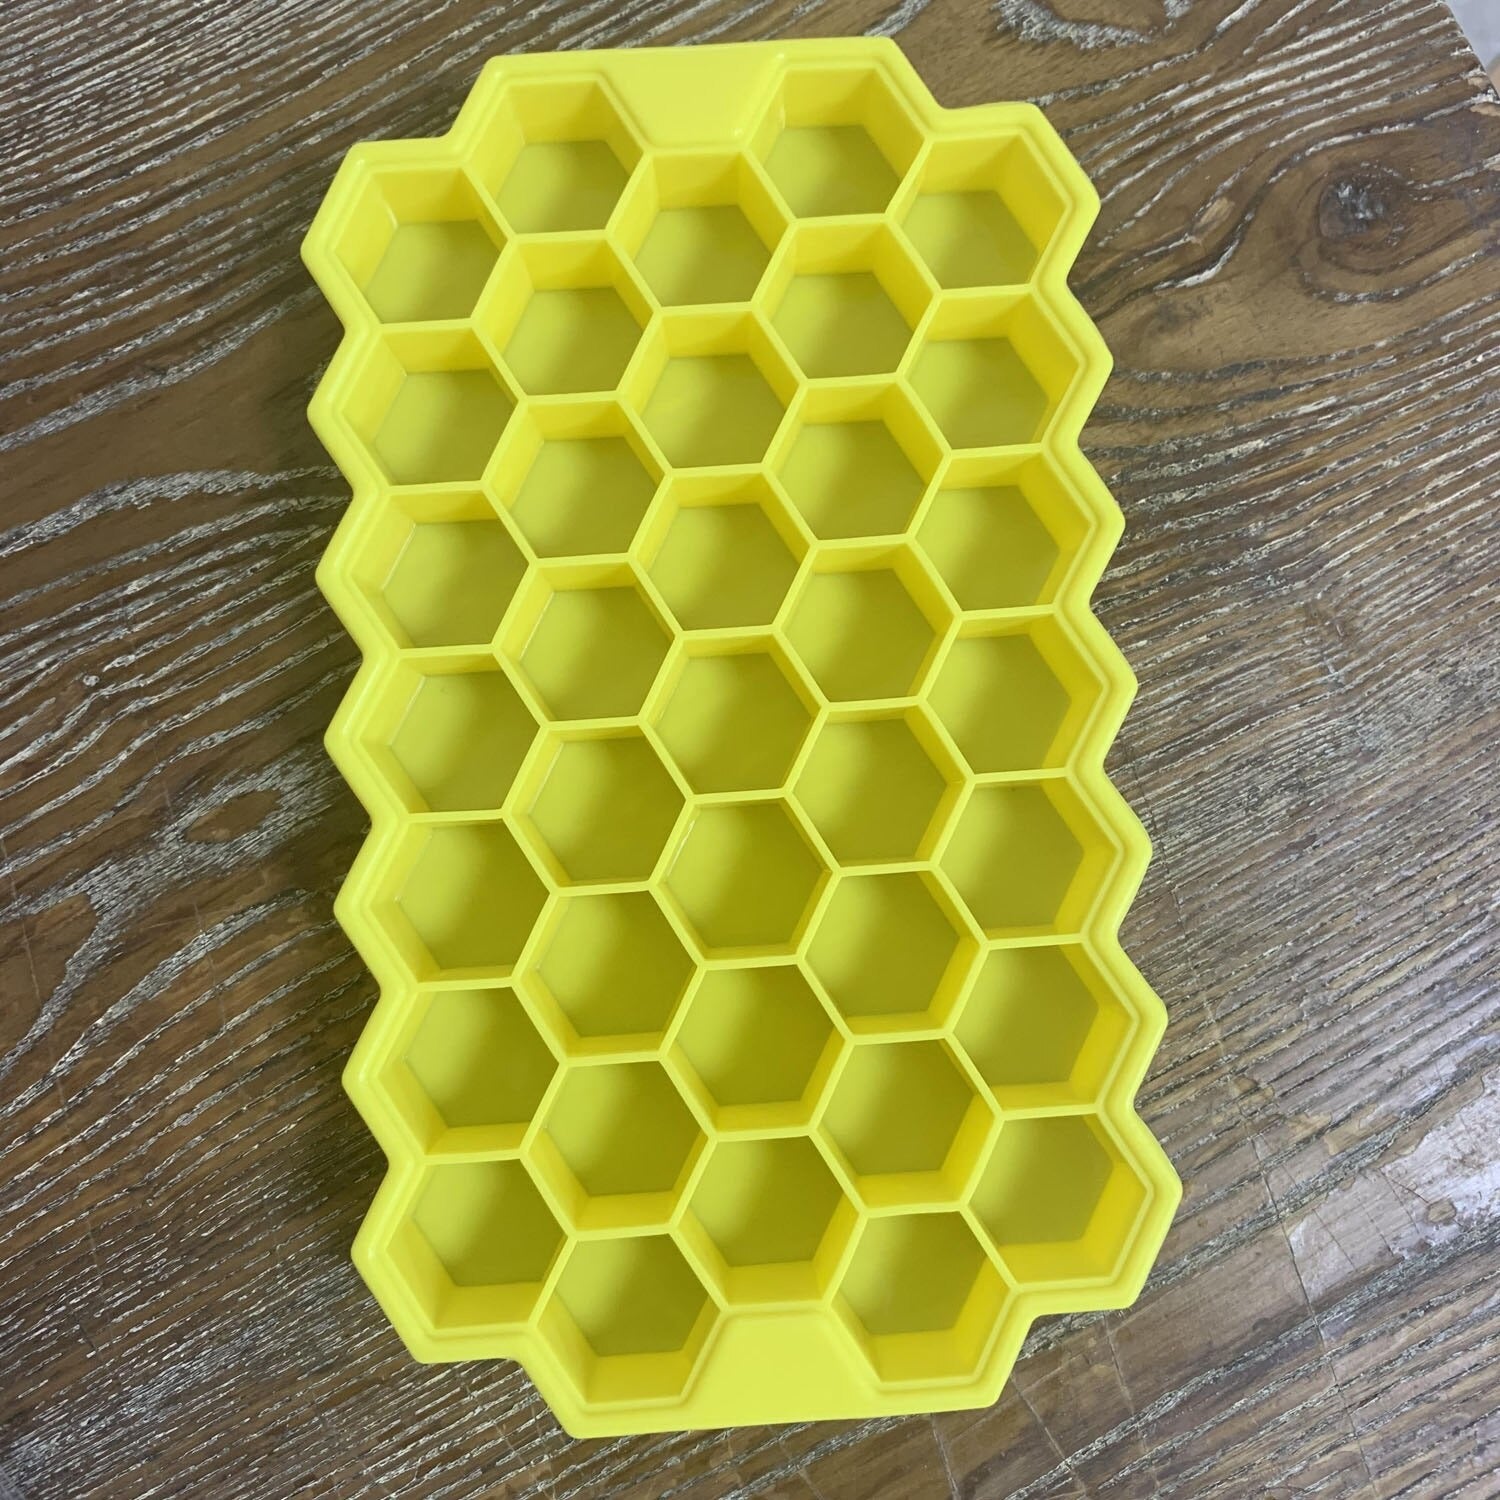 Honey comb ice tray - waseeh.com